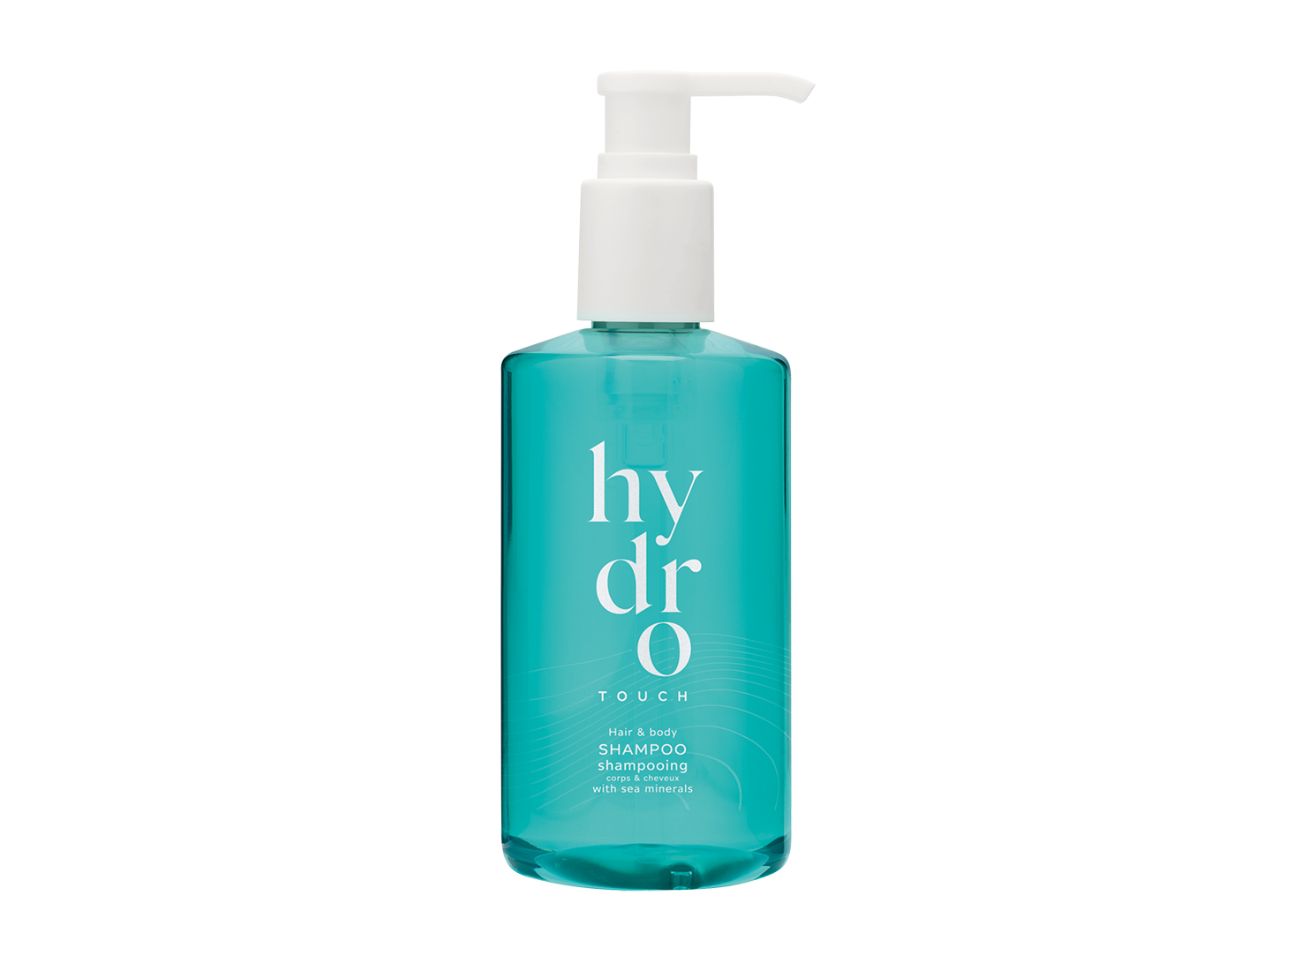 HYDRO TOUCH - Haar- und Bodyshampoo mit Meeresminaralien im Pumpspender, 300 ml